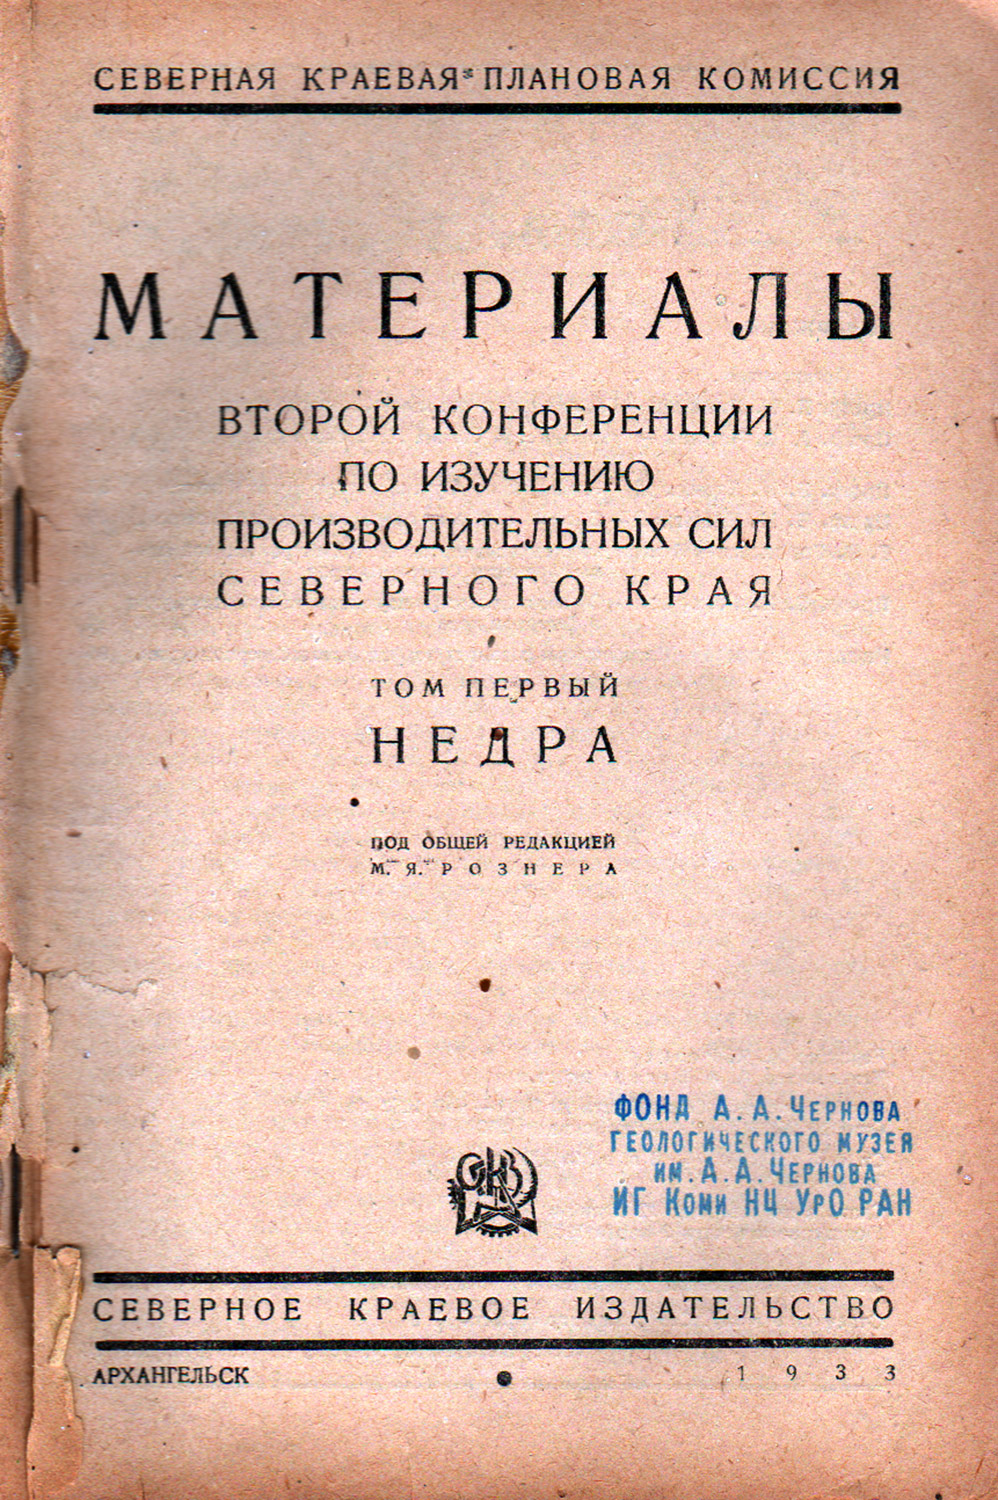 1933 г. Чернов А. А. Геологическая съемка Печорского края и проблема его недр